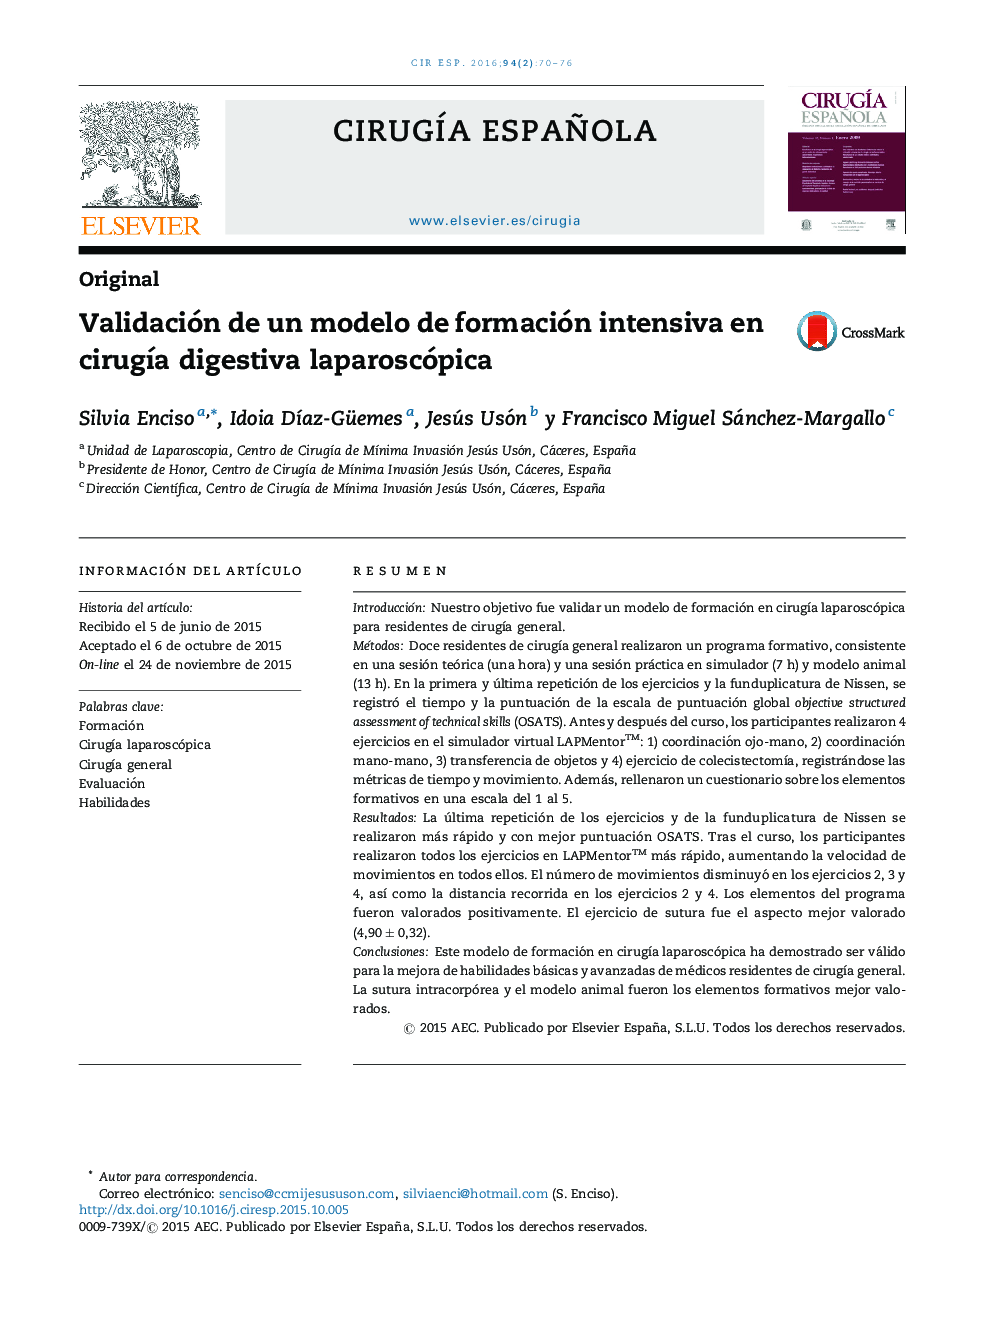 Validación de un modelo de formación intensiva en cirugía digestiva laparoscópica